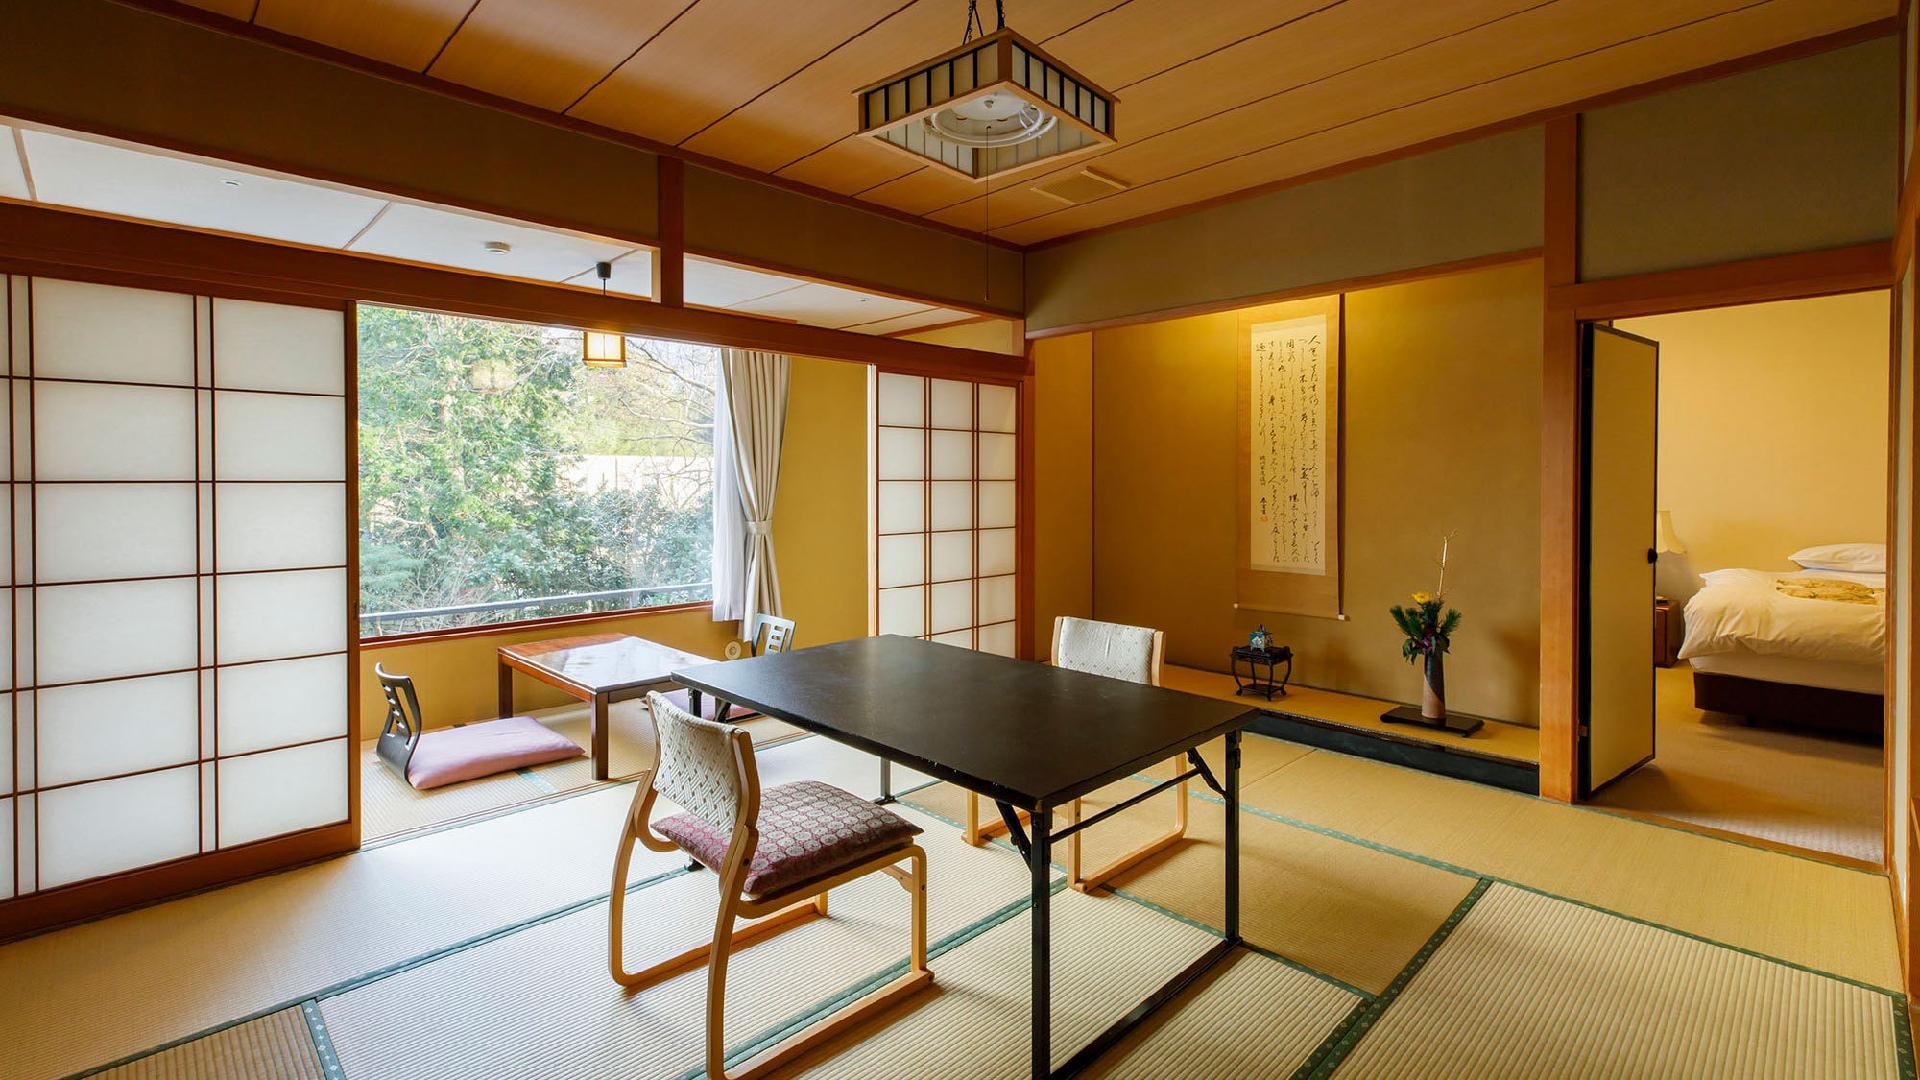 Mizuun 日西式房間/日式房間示例